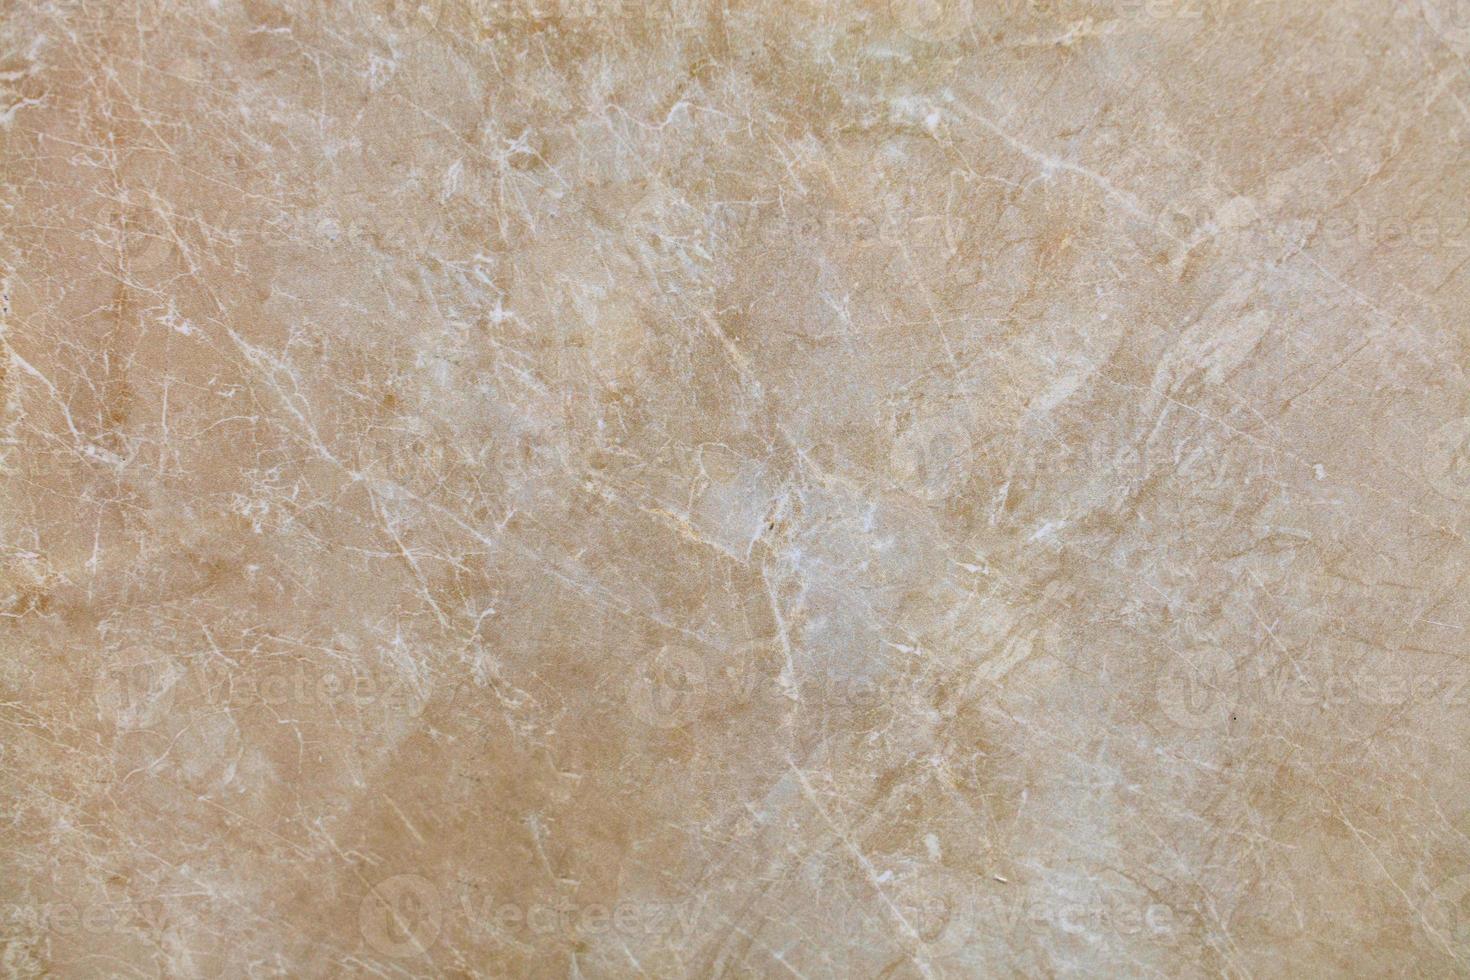 a superfície, textura e fundo de mármore bege com pequenas rachaduras esbranquiçadas. foto